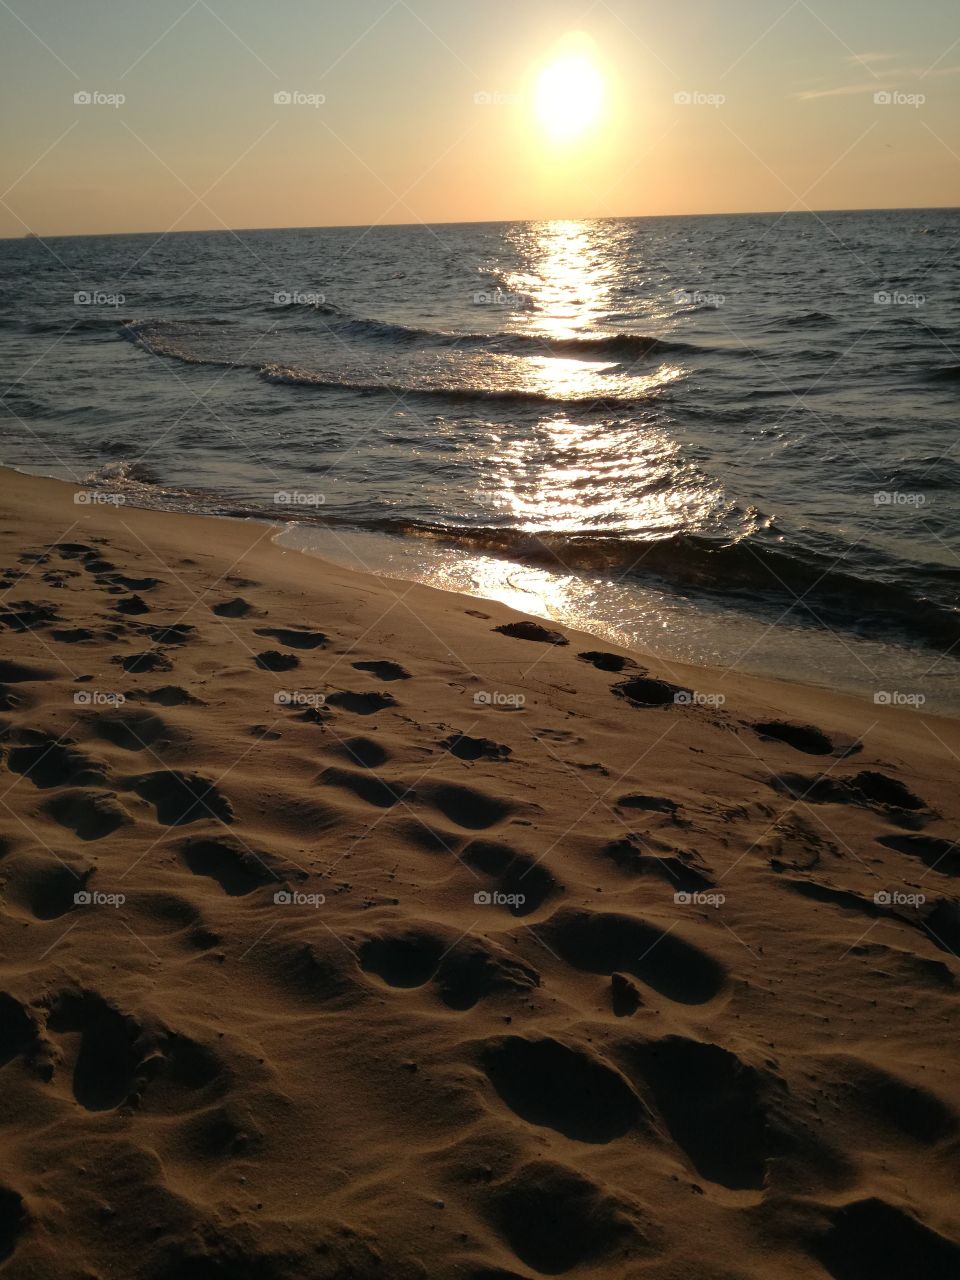 #sunset#poland#sea